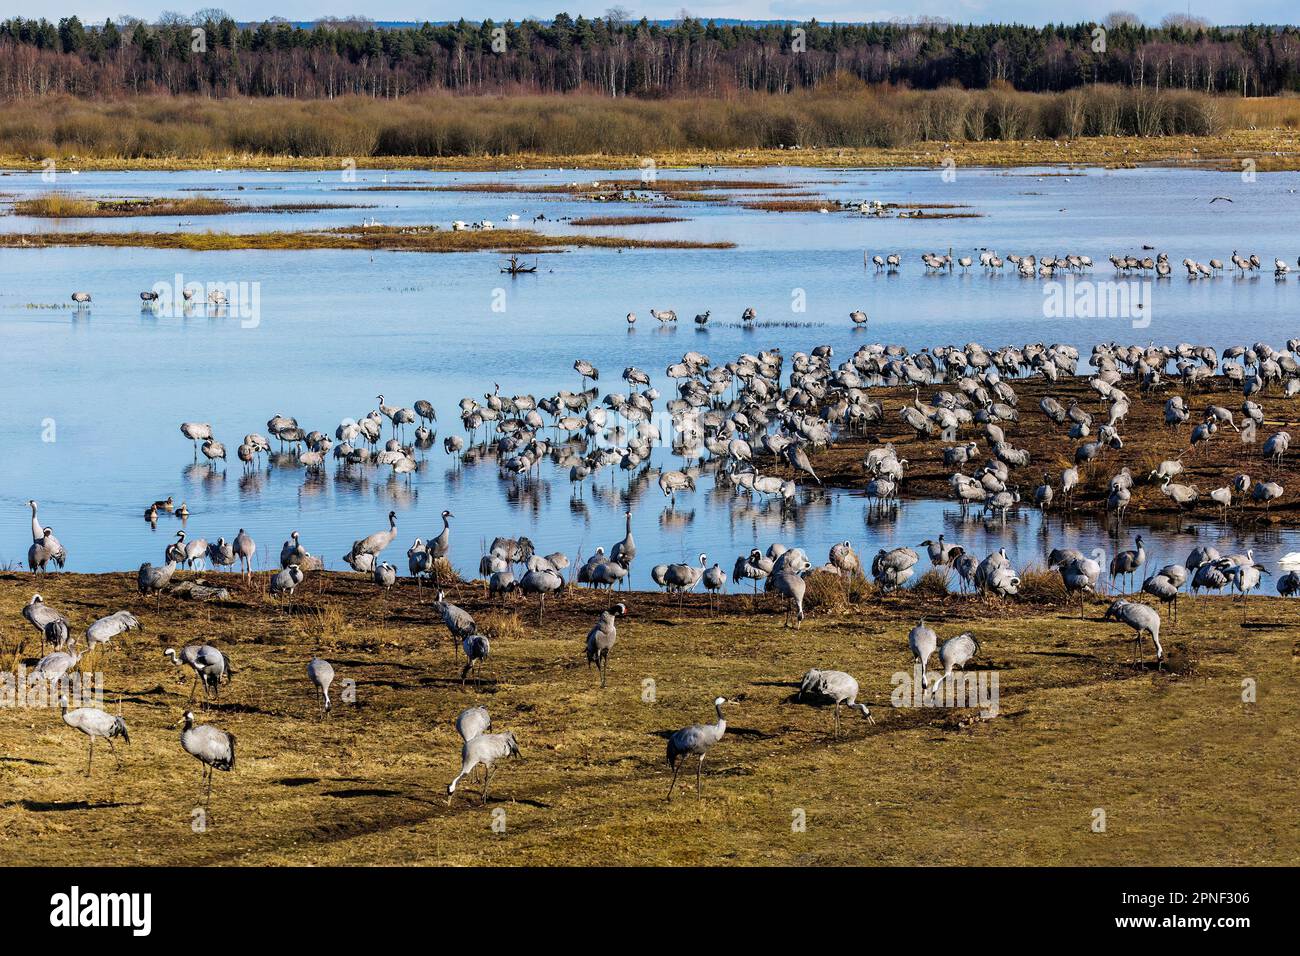 Grue commune, grue eurasienne (Grus grus), colonie de grues au lac Hornborga, Suède, lac Hornborga Banque D'Images